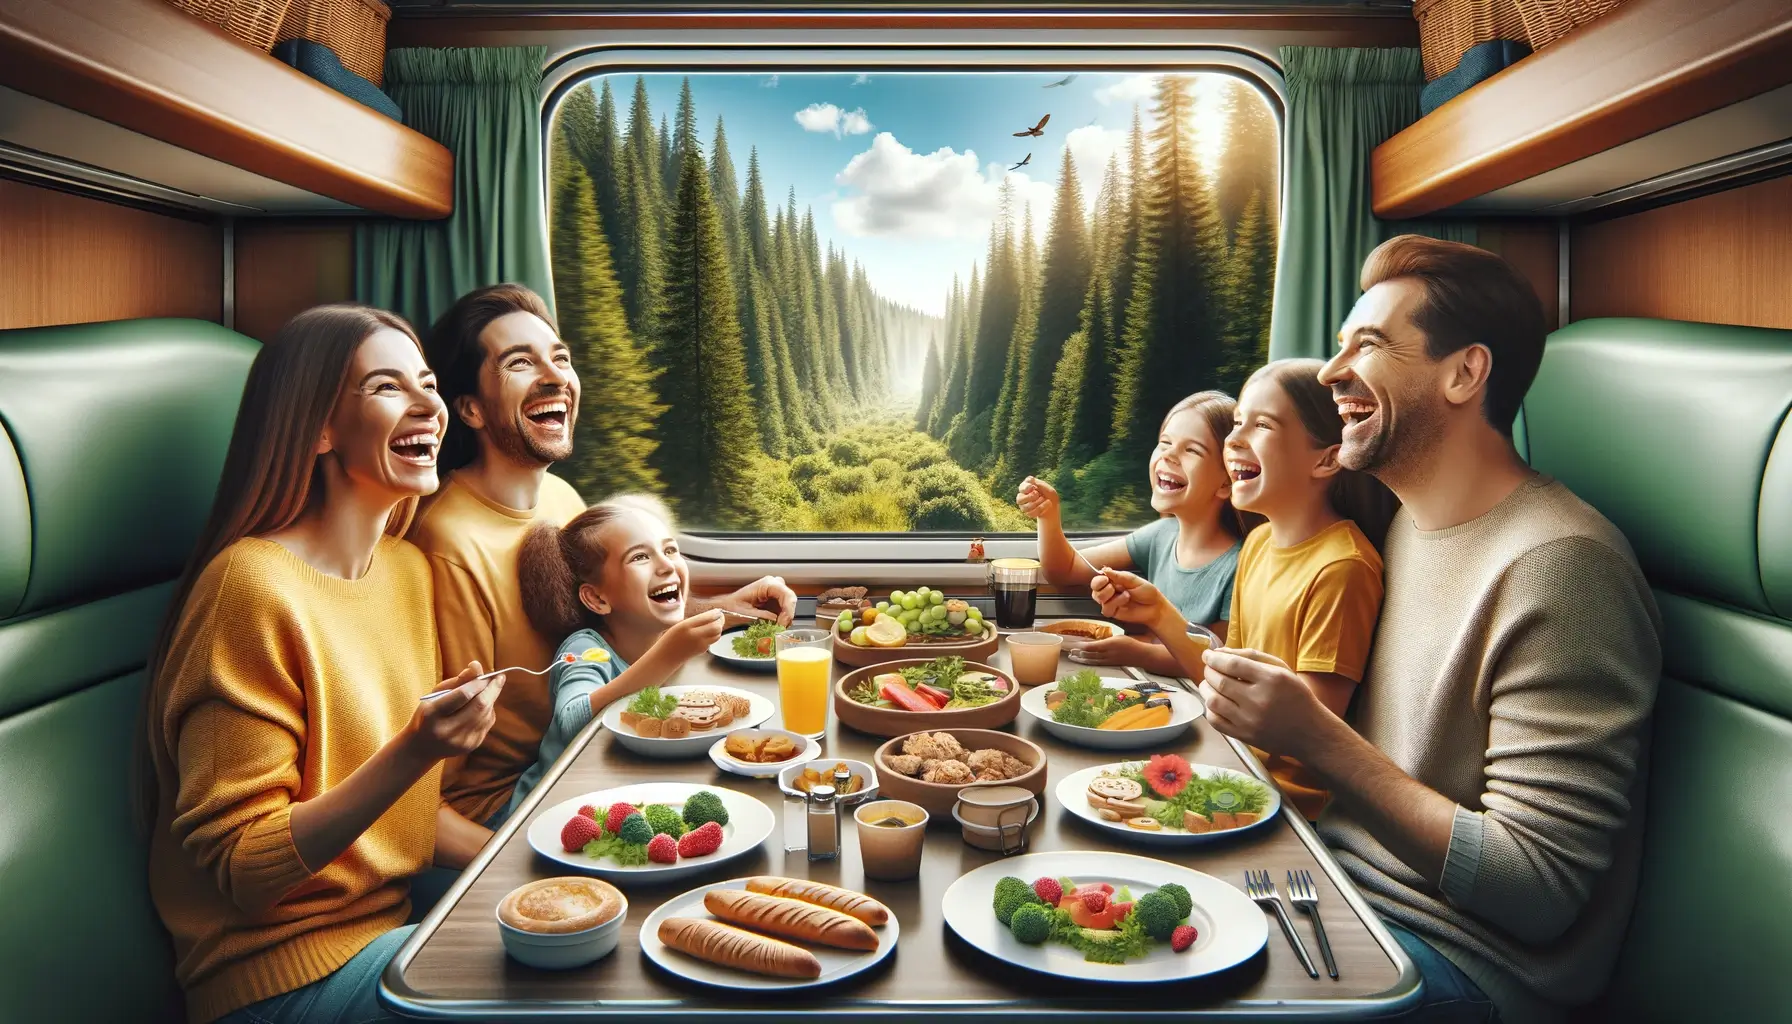 Изображение семьи, отправляющейся в отпуск на поезде. Сцена наполнена смехом и вкусной едой, а за окном виден живописный лес.